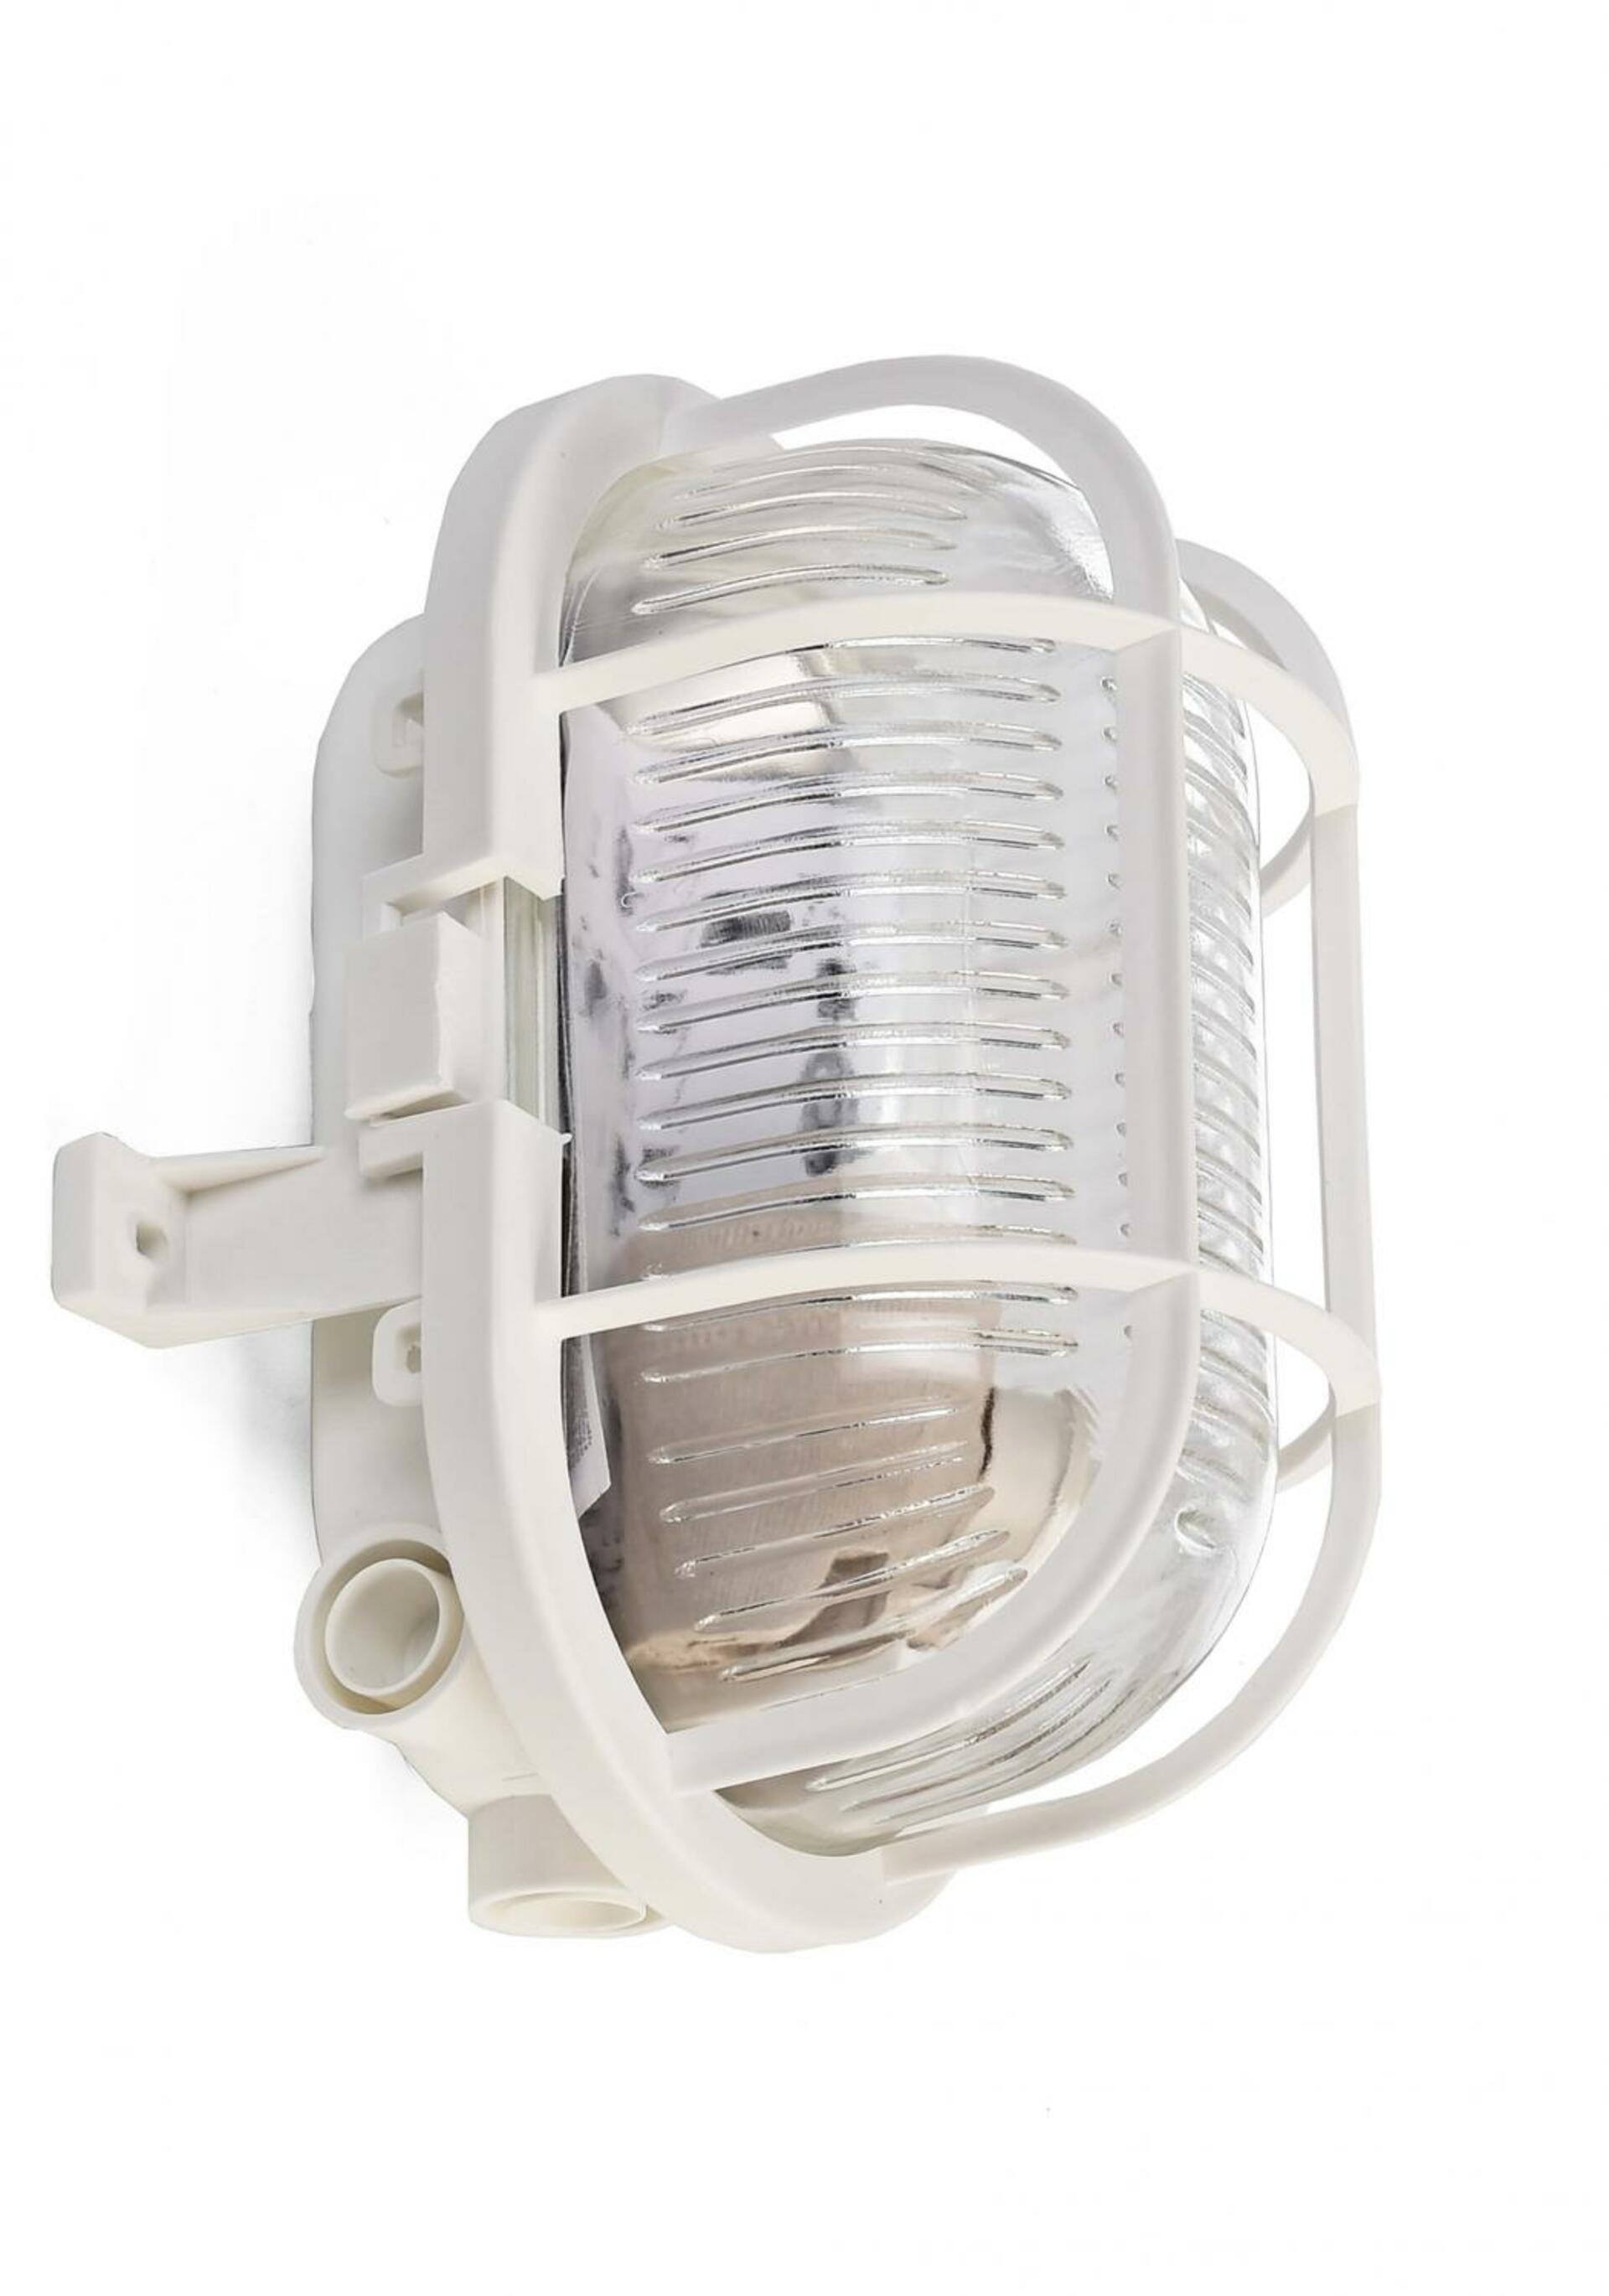 Light Impressions Deko-Light nástěnné a stropní svítidlo Syrma Oval bílá 220-240V AC/50-60Hz E27 1x max. 42,00 W 170 bílá 401011